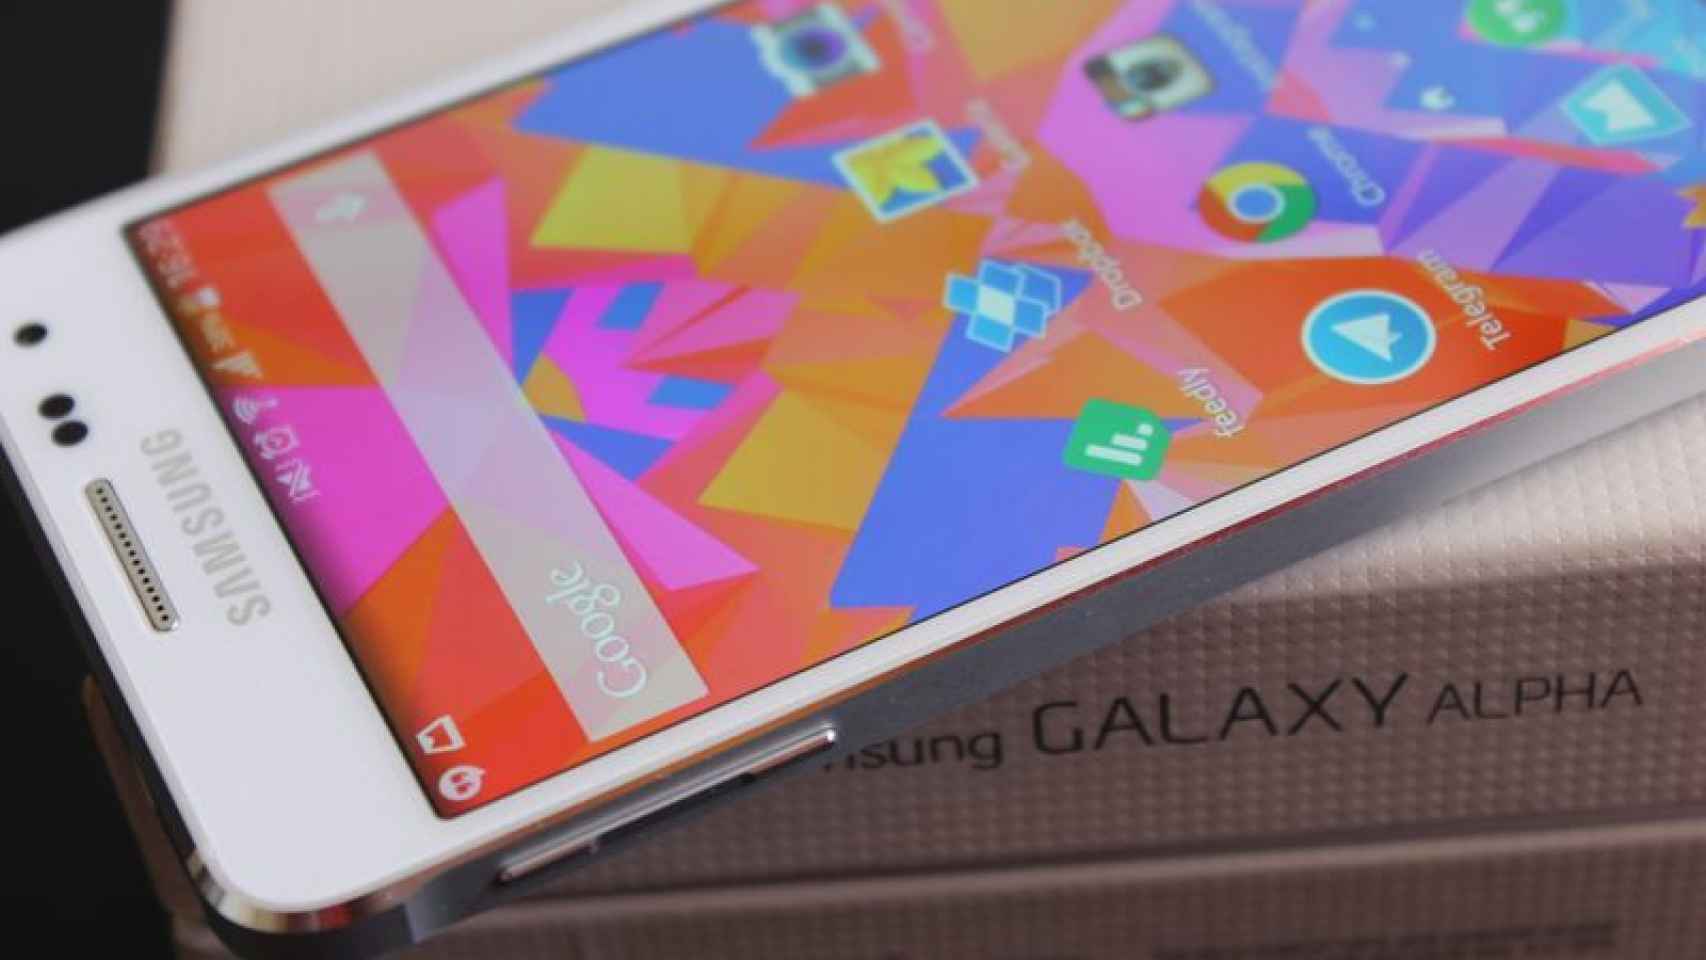 Samsung Galaxy Alpha: Análisis y experiencia de uso